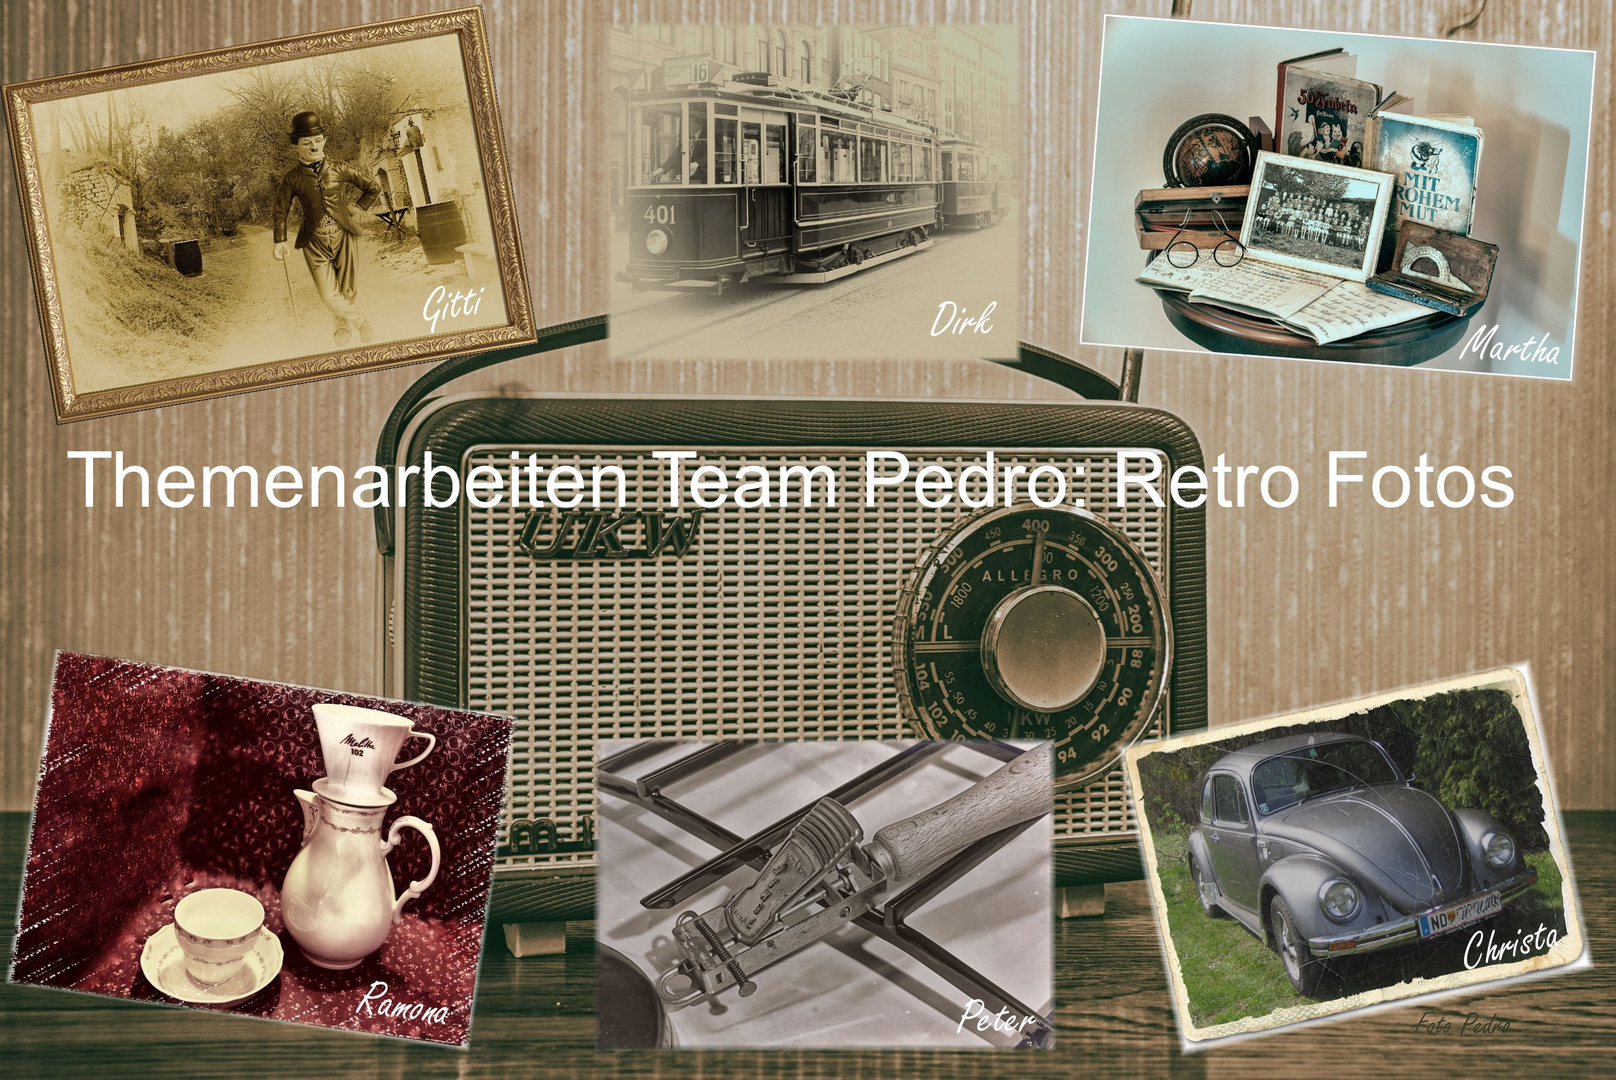 Themenarbeiten Team Pedro: Retro Fotos